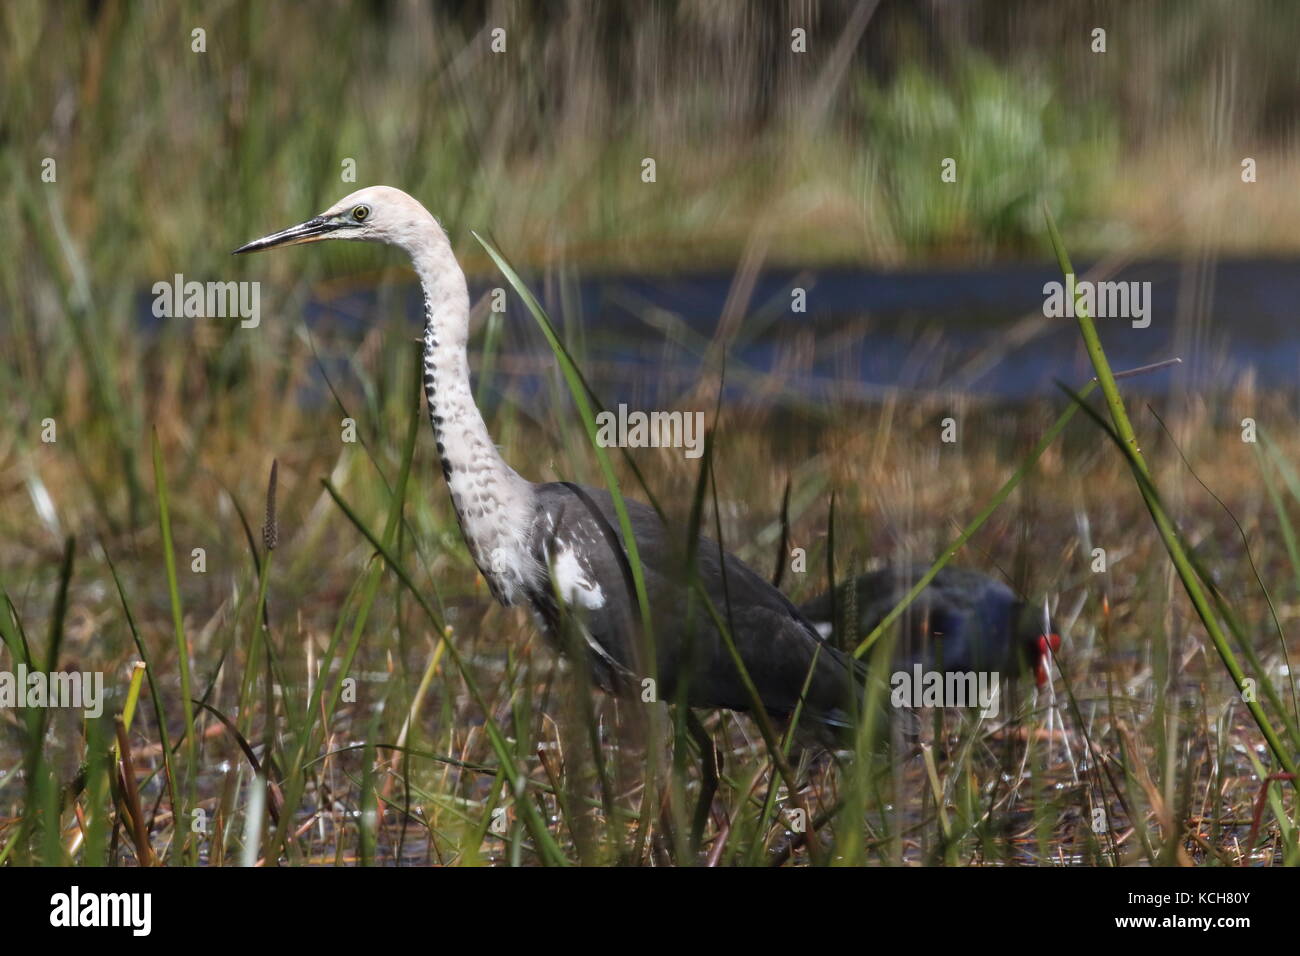 white-necked heron fishing among reeds Stock Photo